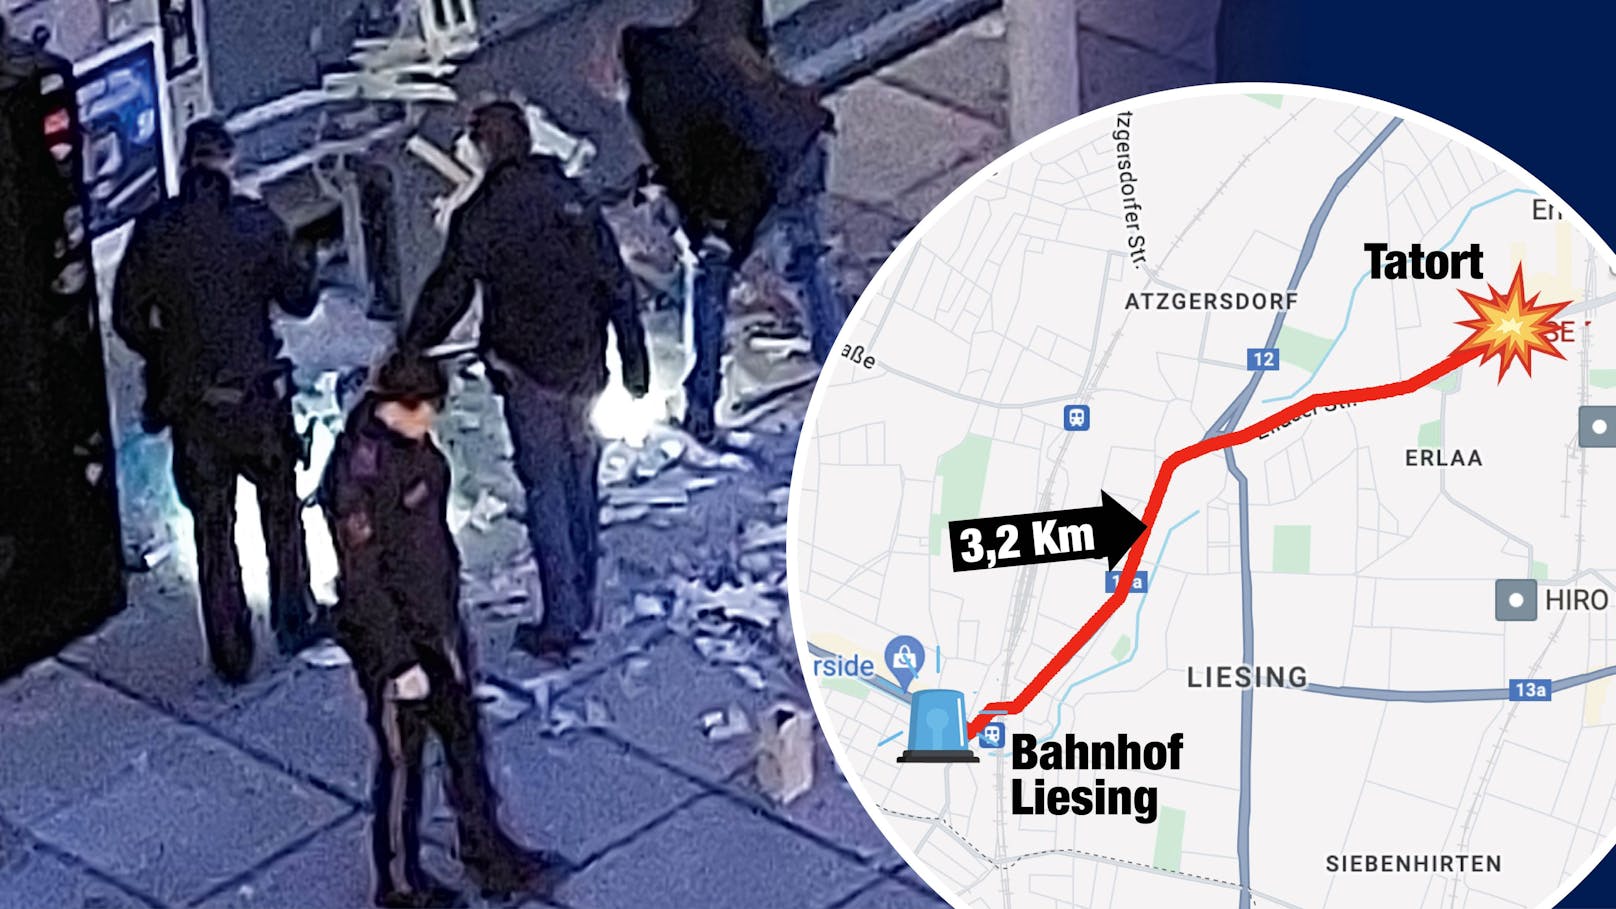 Tschick-Coup in Wien wenige Meter vor Polizeiinspektion <a data-li-document-ref="120027389" href="https://www.heute.at/s/tschick-coup-in-wien-wenige-meter-vor-polizeiinspektion-120027389">&gt;&gt;&gt;</a>